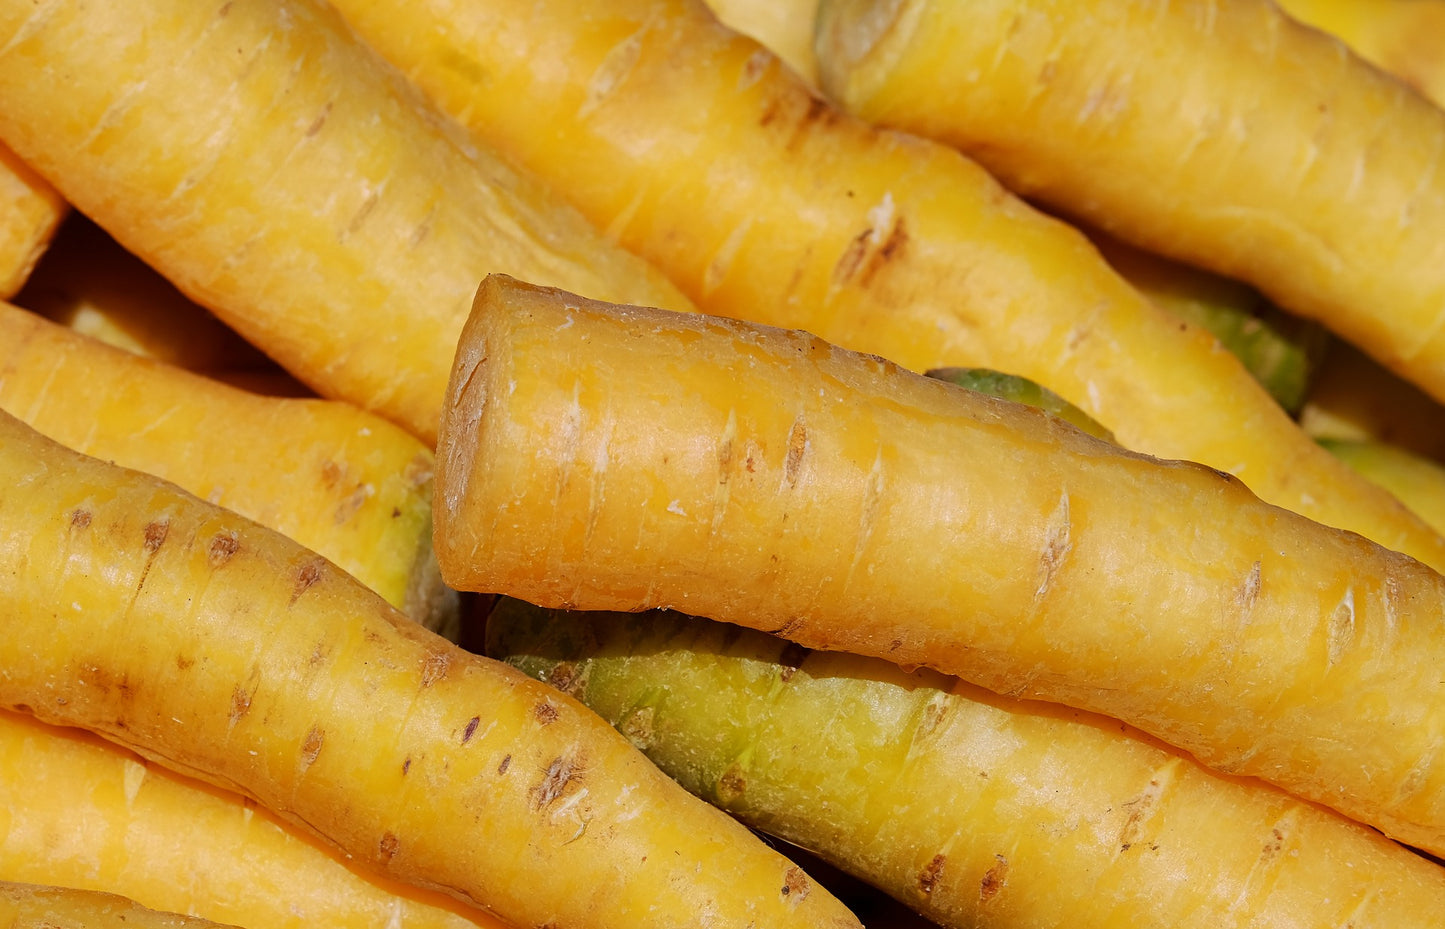 Carrot Yellow Gochsheimer [daucus carota]